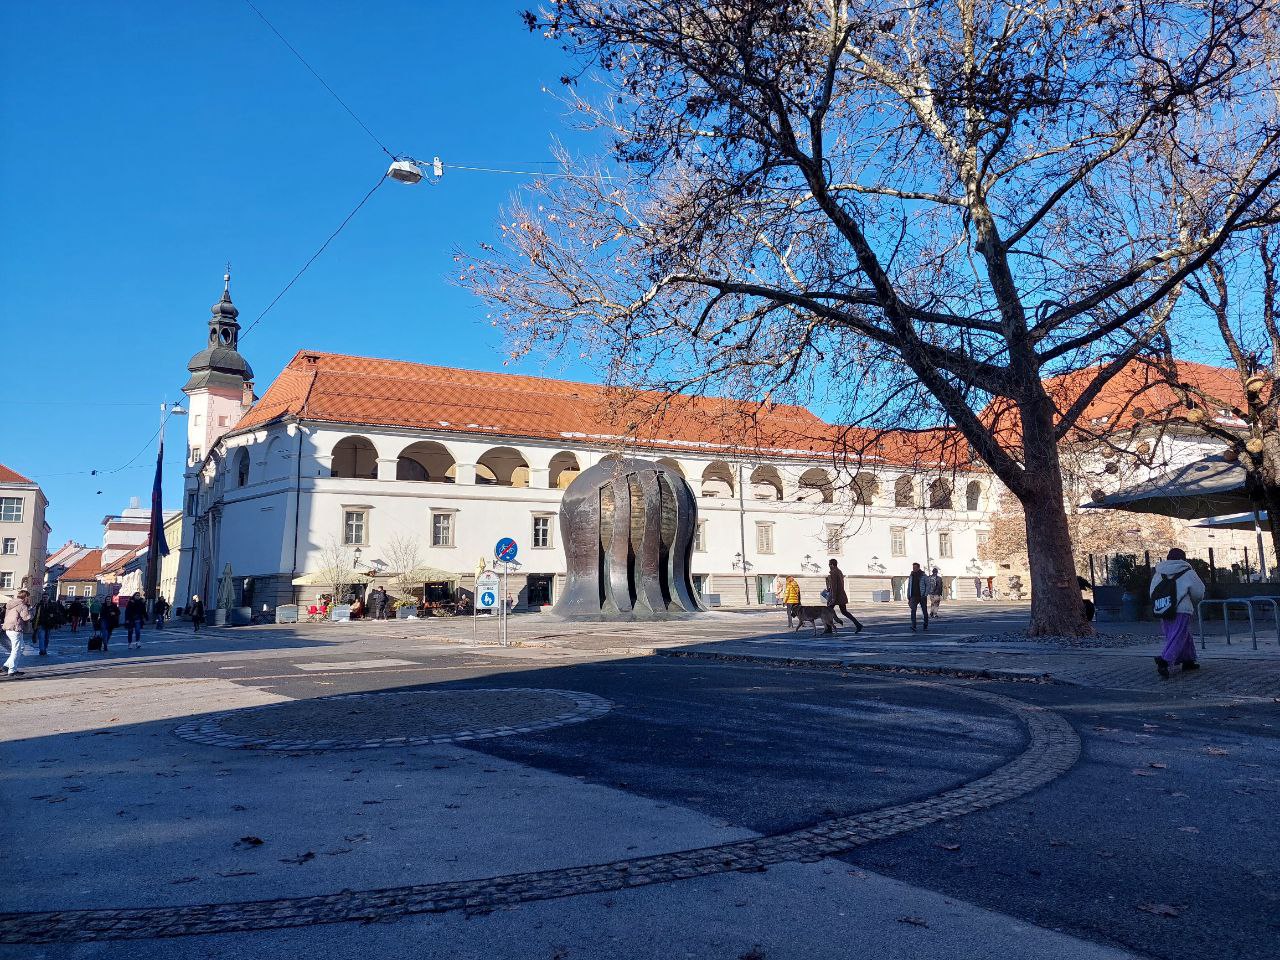 Glavni, Vojašniški, Slomškov … Ali bo prenove v Mariboru deležen še kateri od trgov?